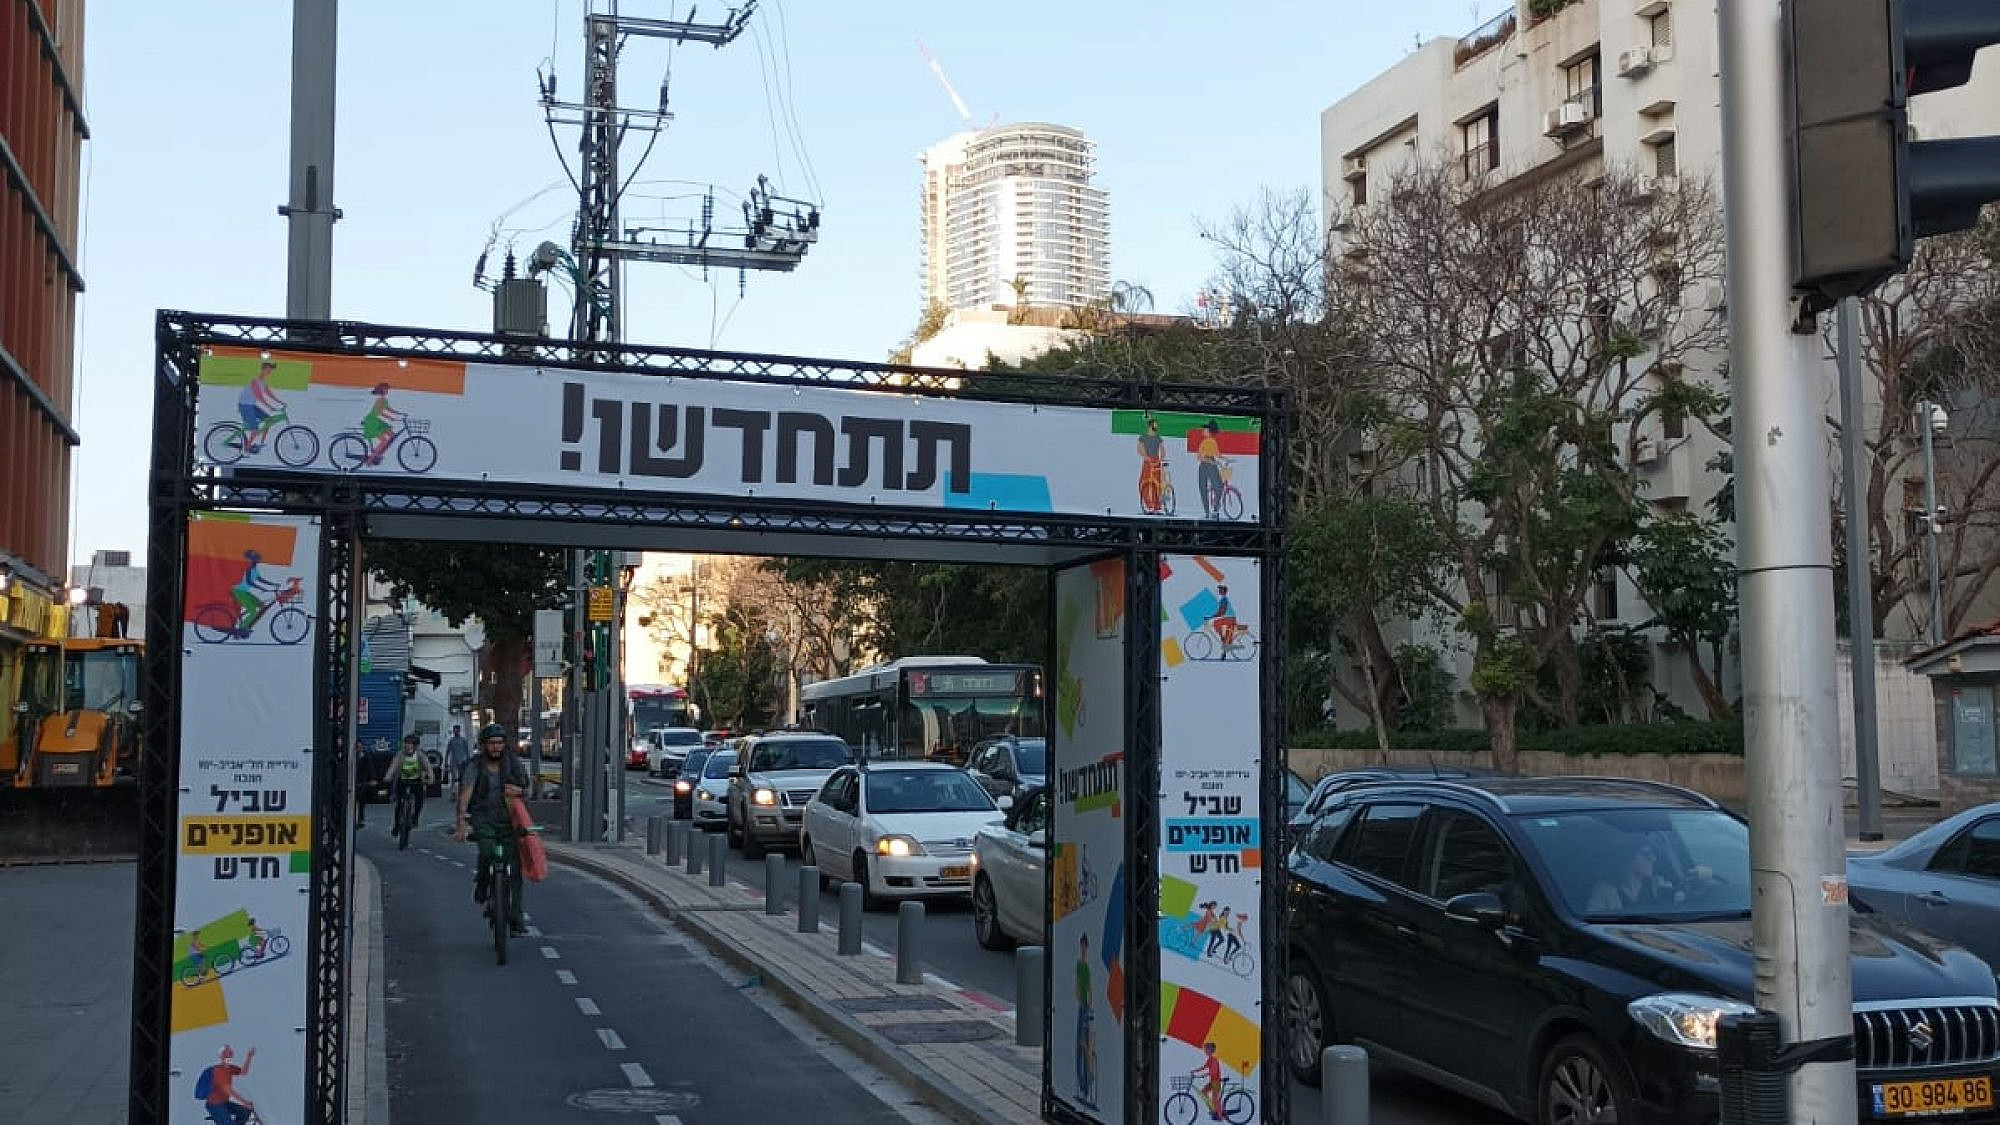 שער לשביל האופניים החדש ביגאל אלון (צילום באדיבות דוברות עיריית ת"א-יפו)